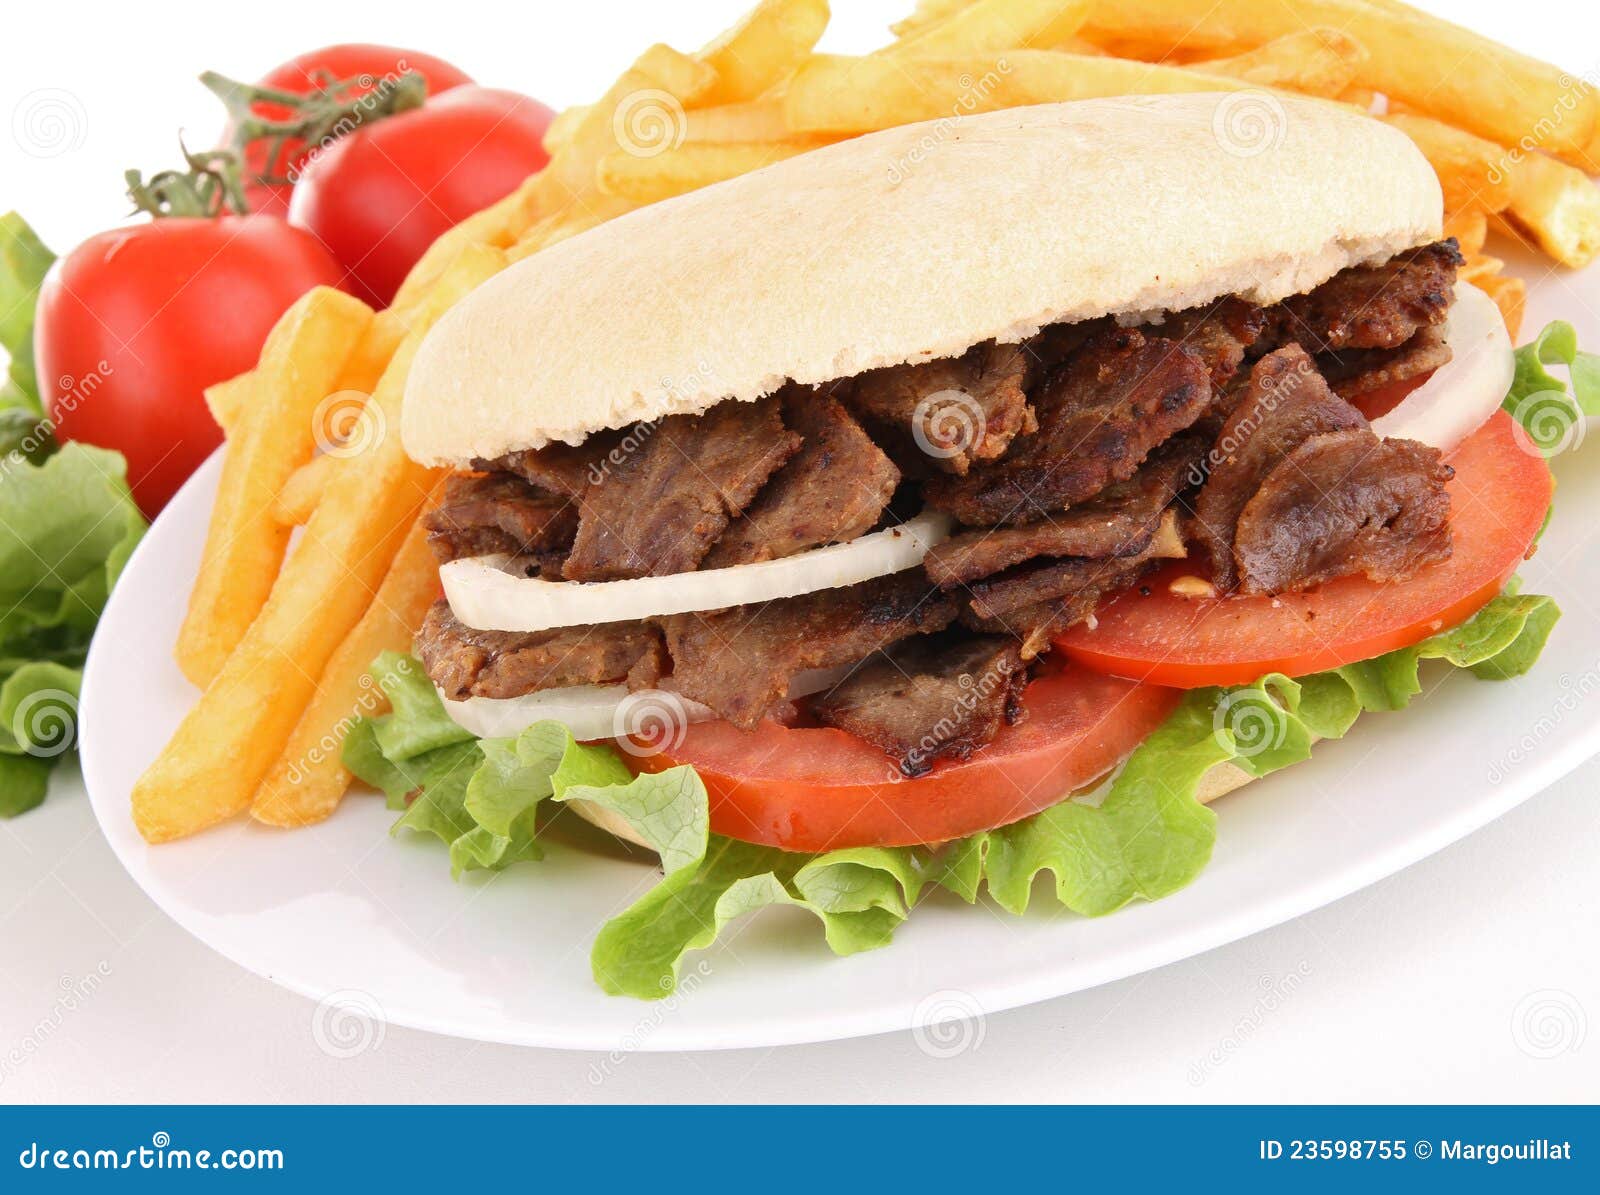 Kebab stock image. Image of salad, bread, onion, turkish - 23598755